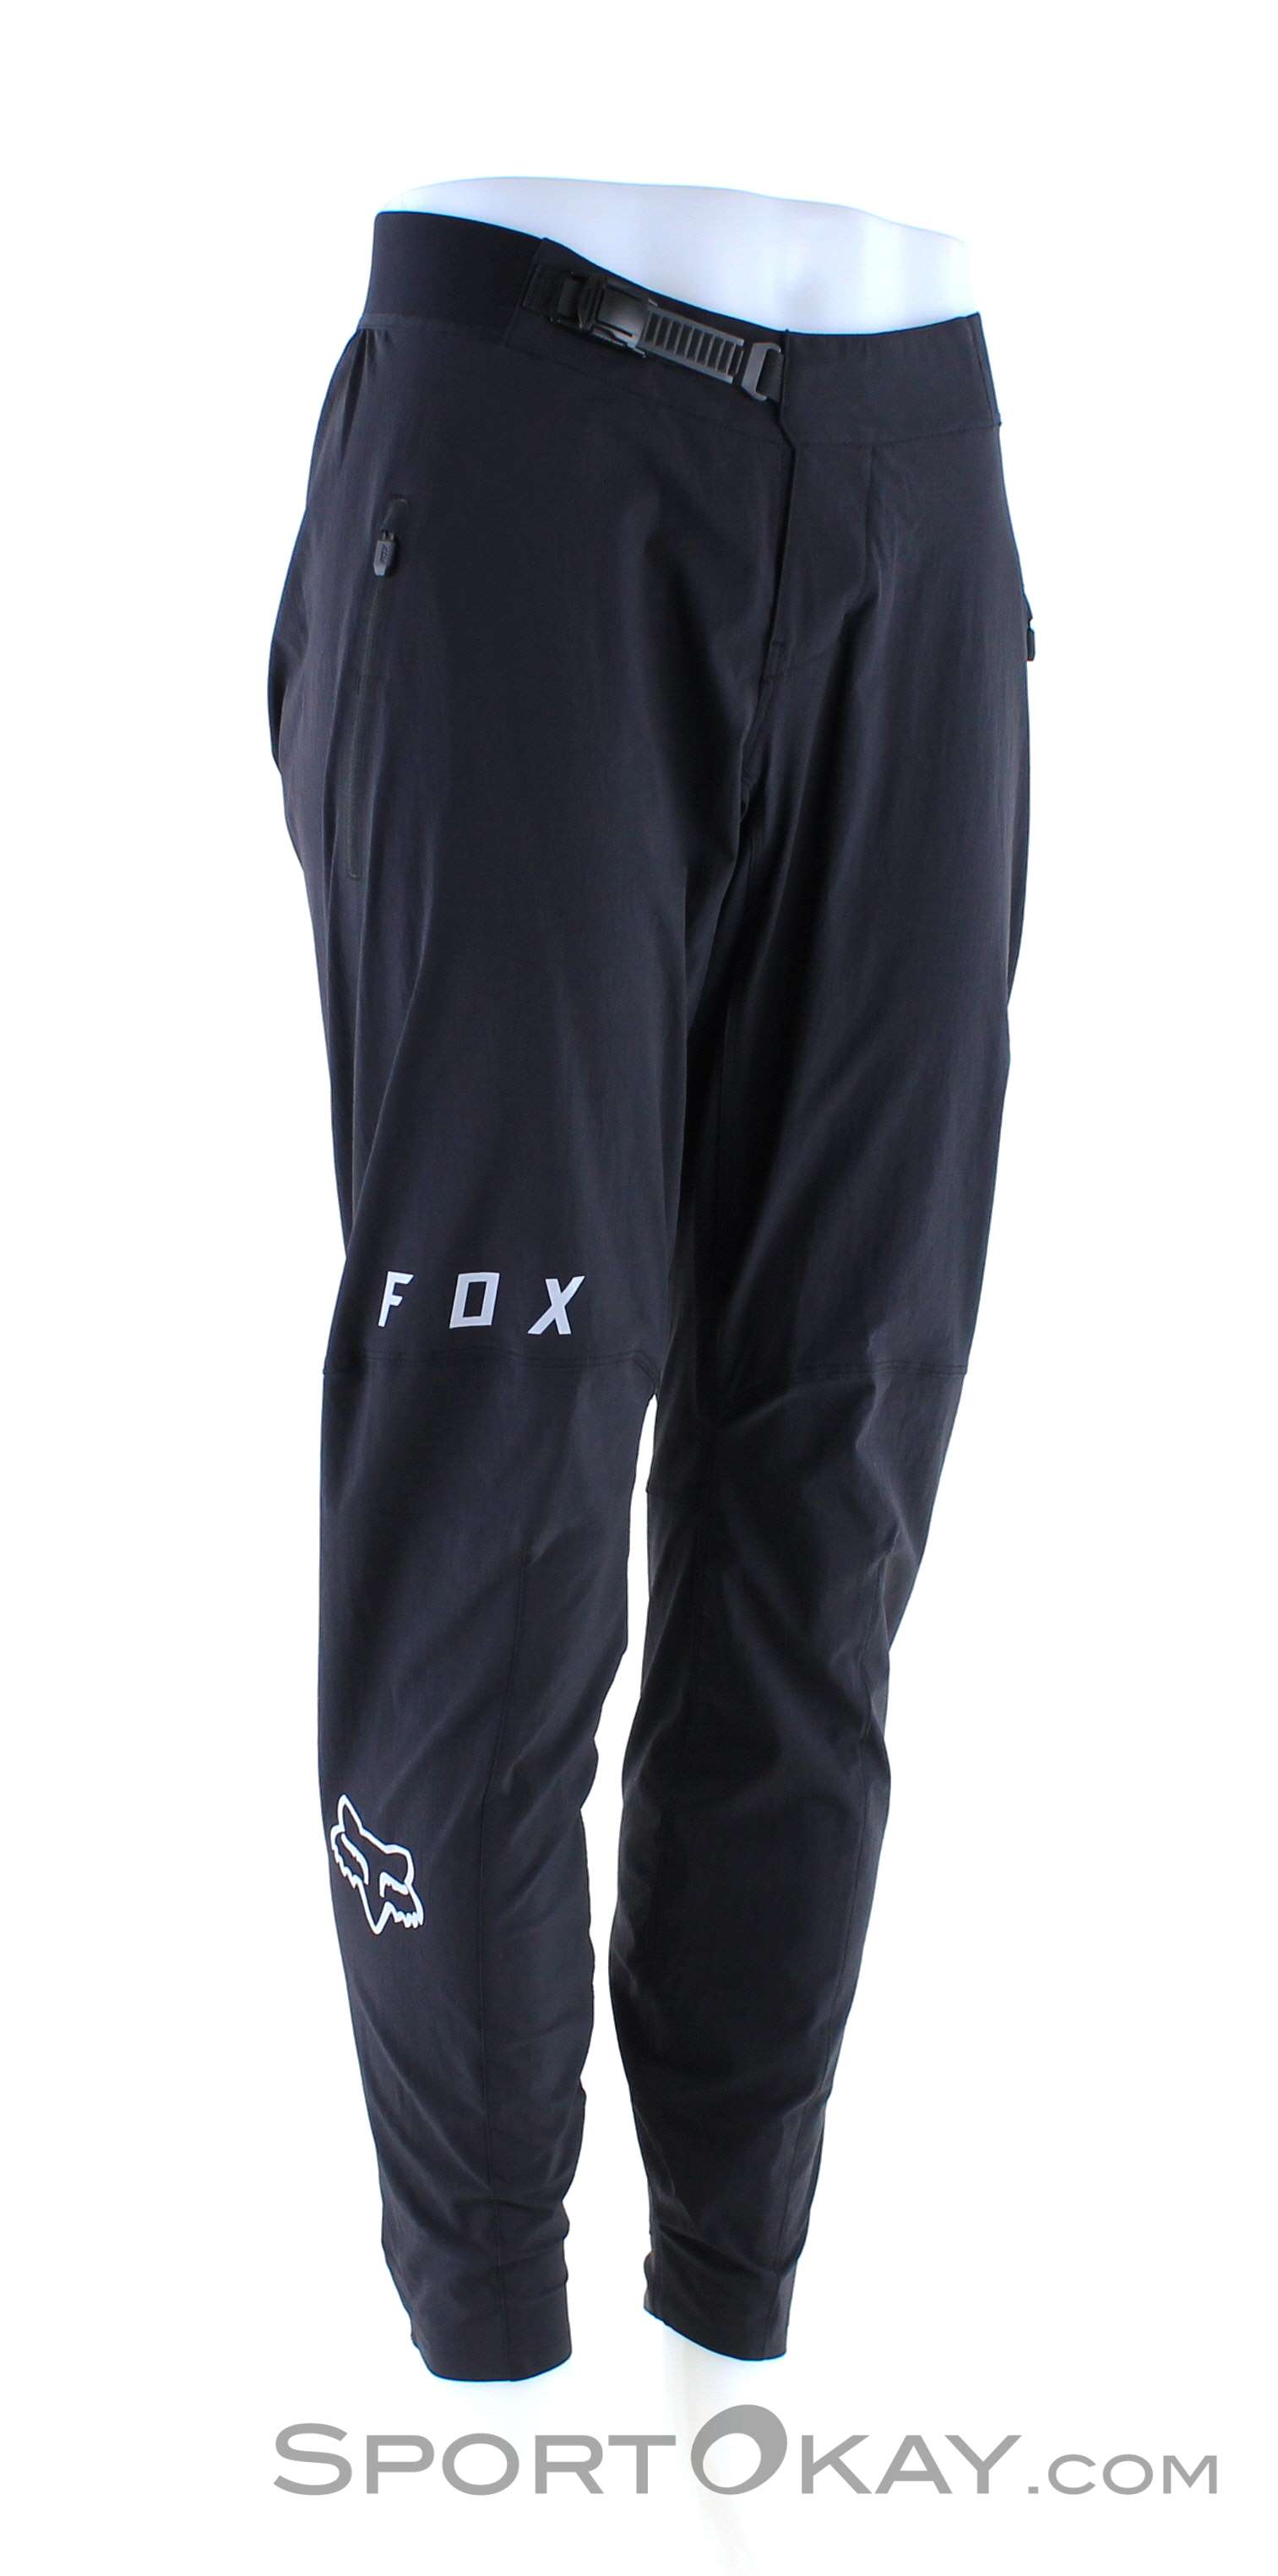 fox flexair mtb pants